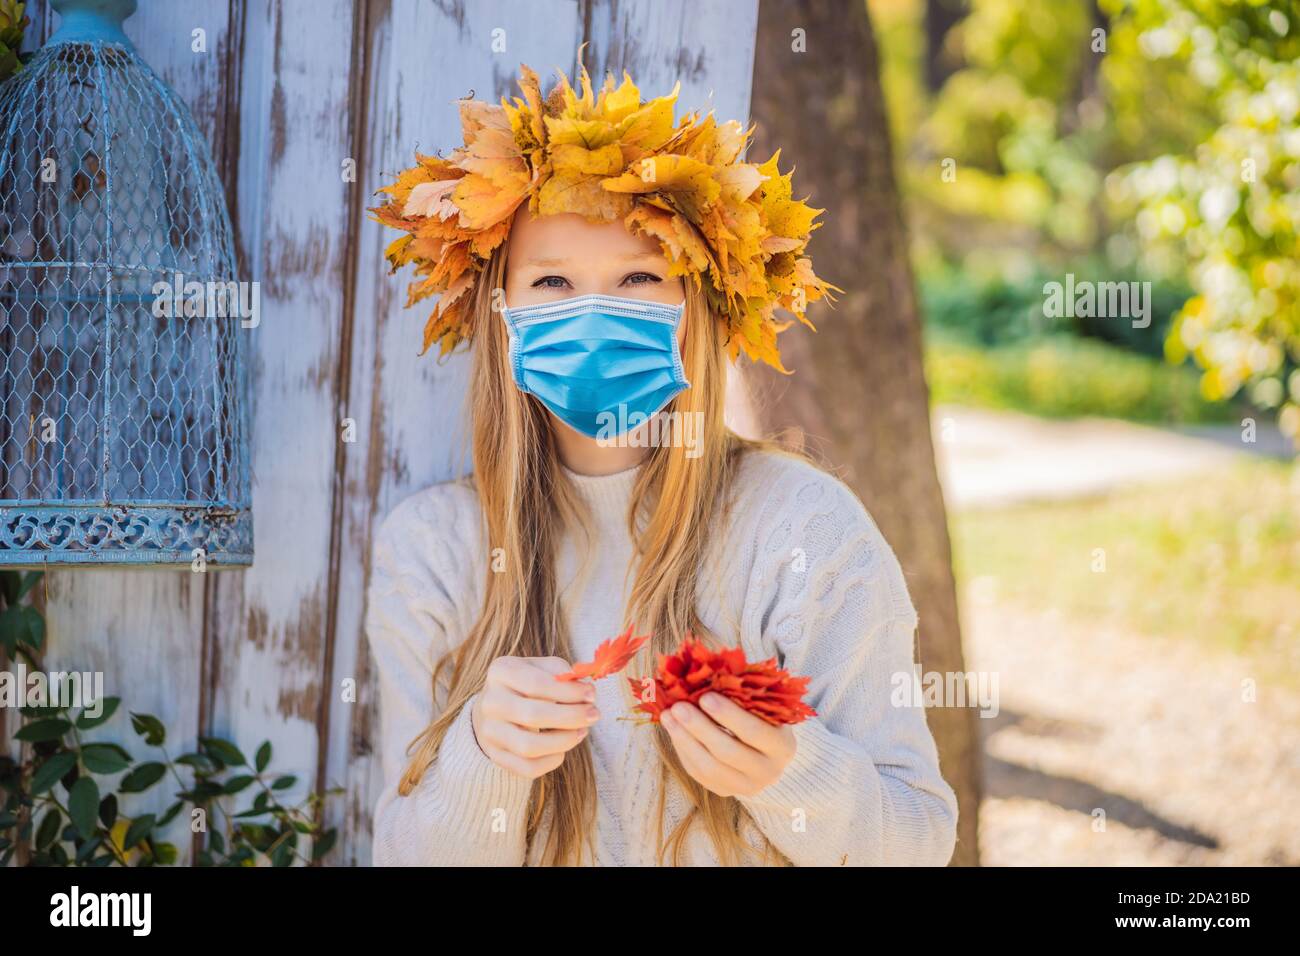 Estilo de vida al aire libre primer plano retrato de encantadora mujer joven rubia Usar una máscara médica durante el coronavirus COVID-19 usando una corona de otoño Foto de stock